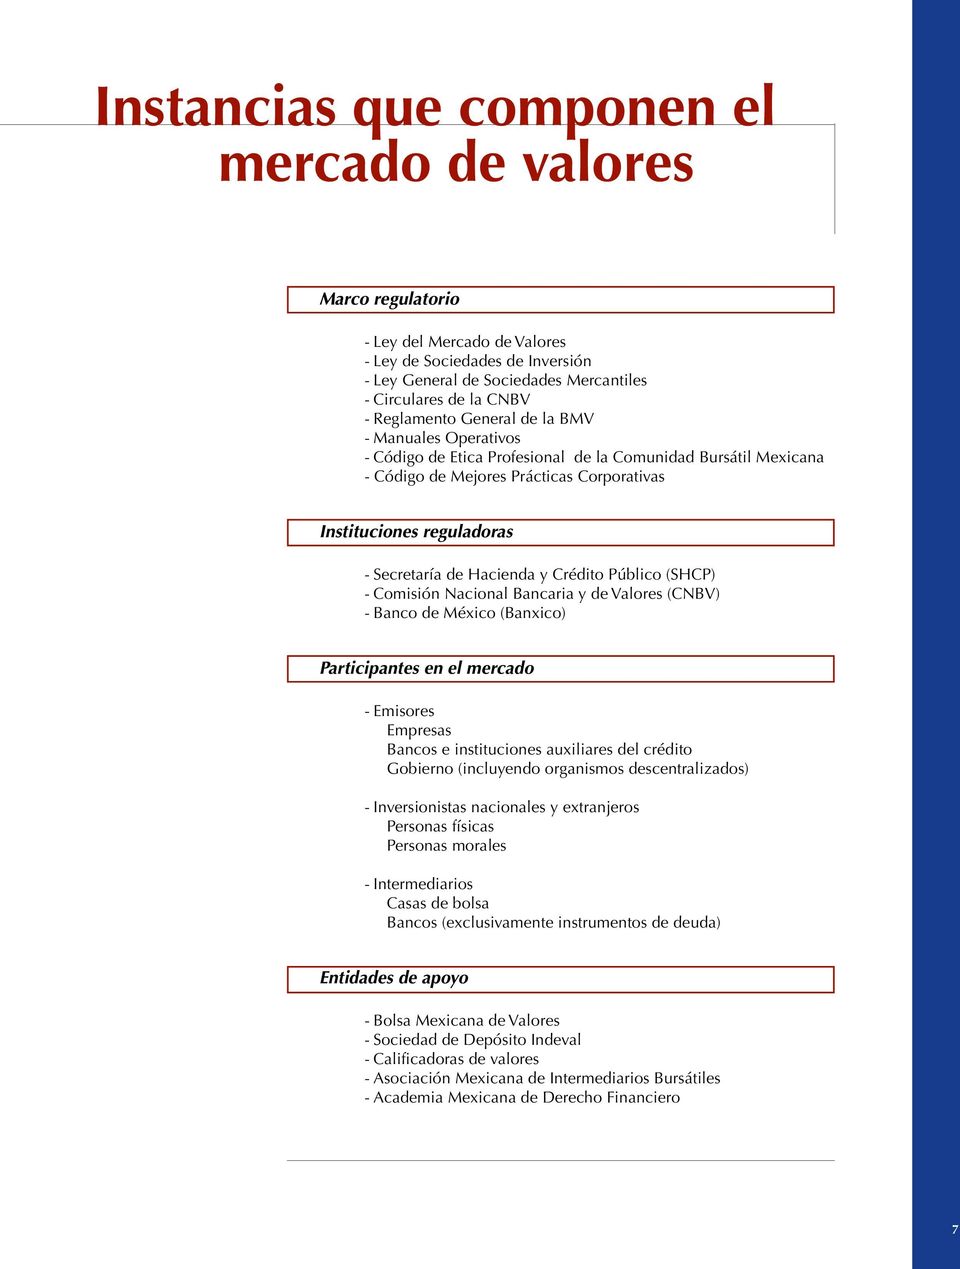 Hacienda y Crédito Público (SHCP) - Comisión Nacional Bancaria y de Valores (CNBV) - Banco de México (Banxico) Participantes en el mercado - Emisores Empresas Bancos e instituciones auxiliares del